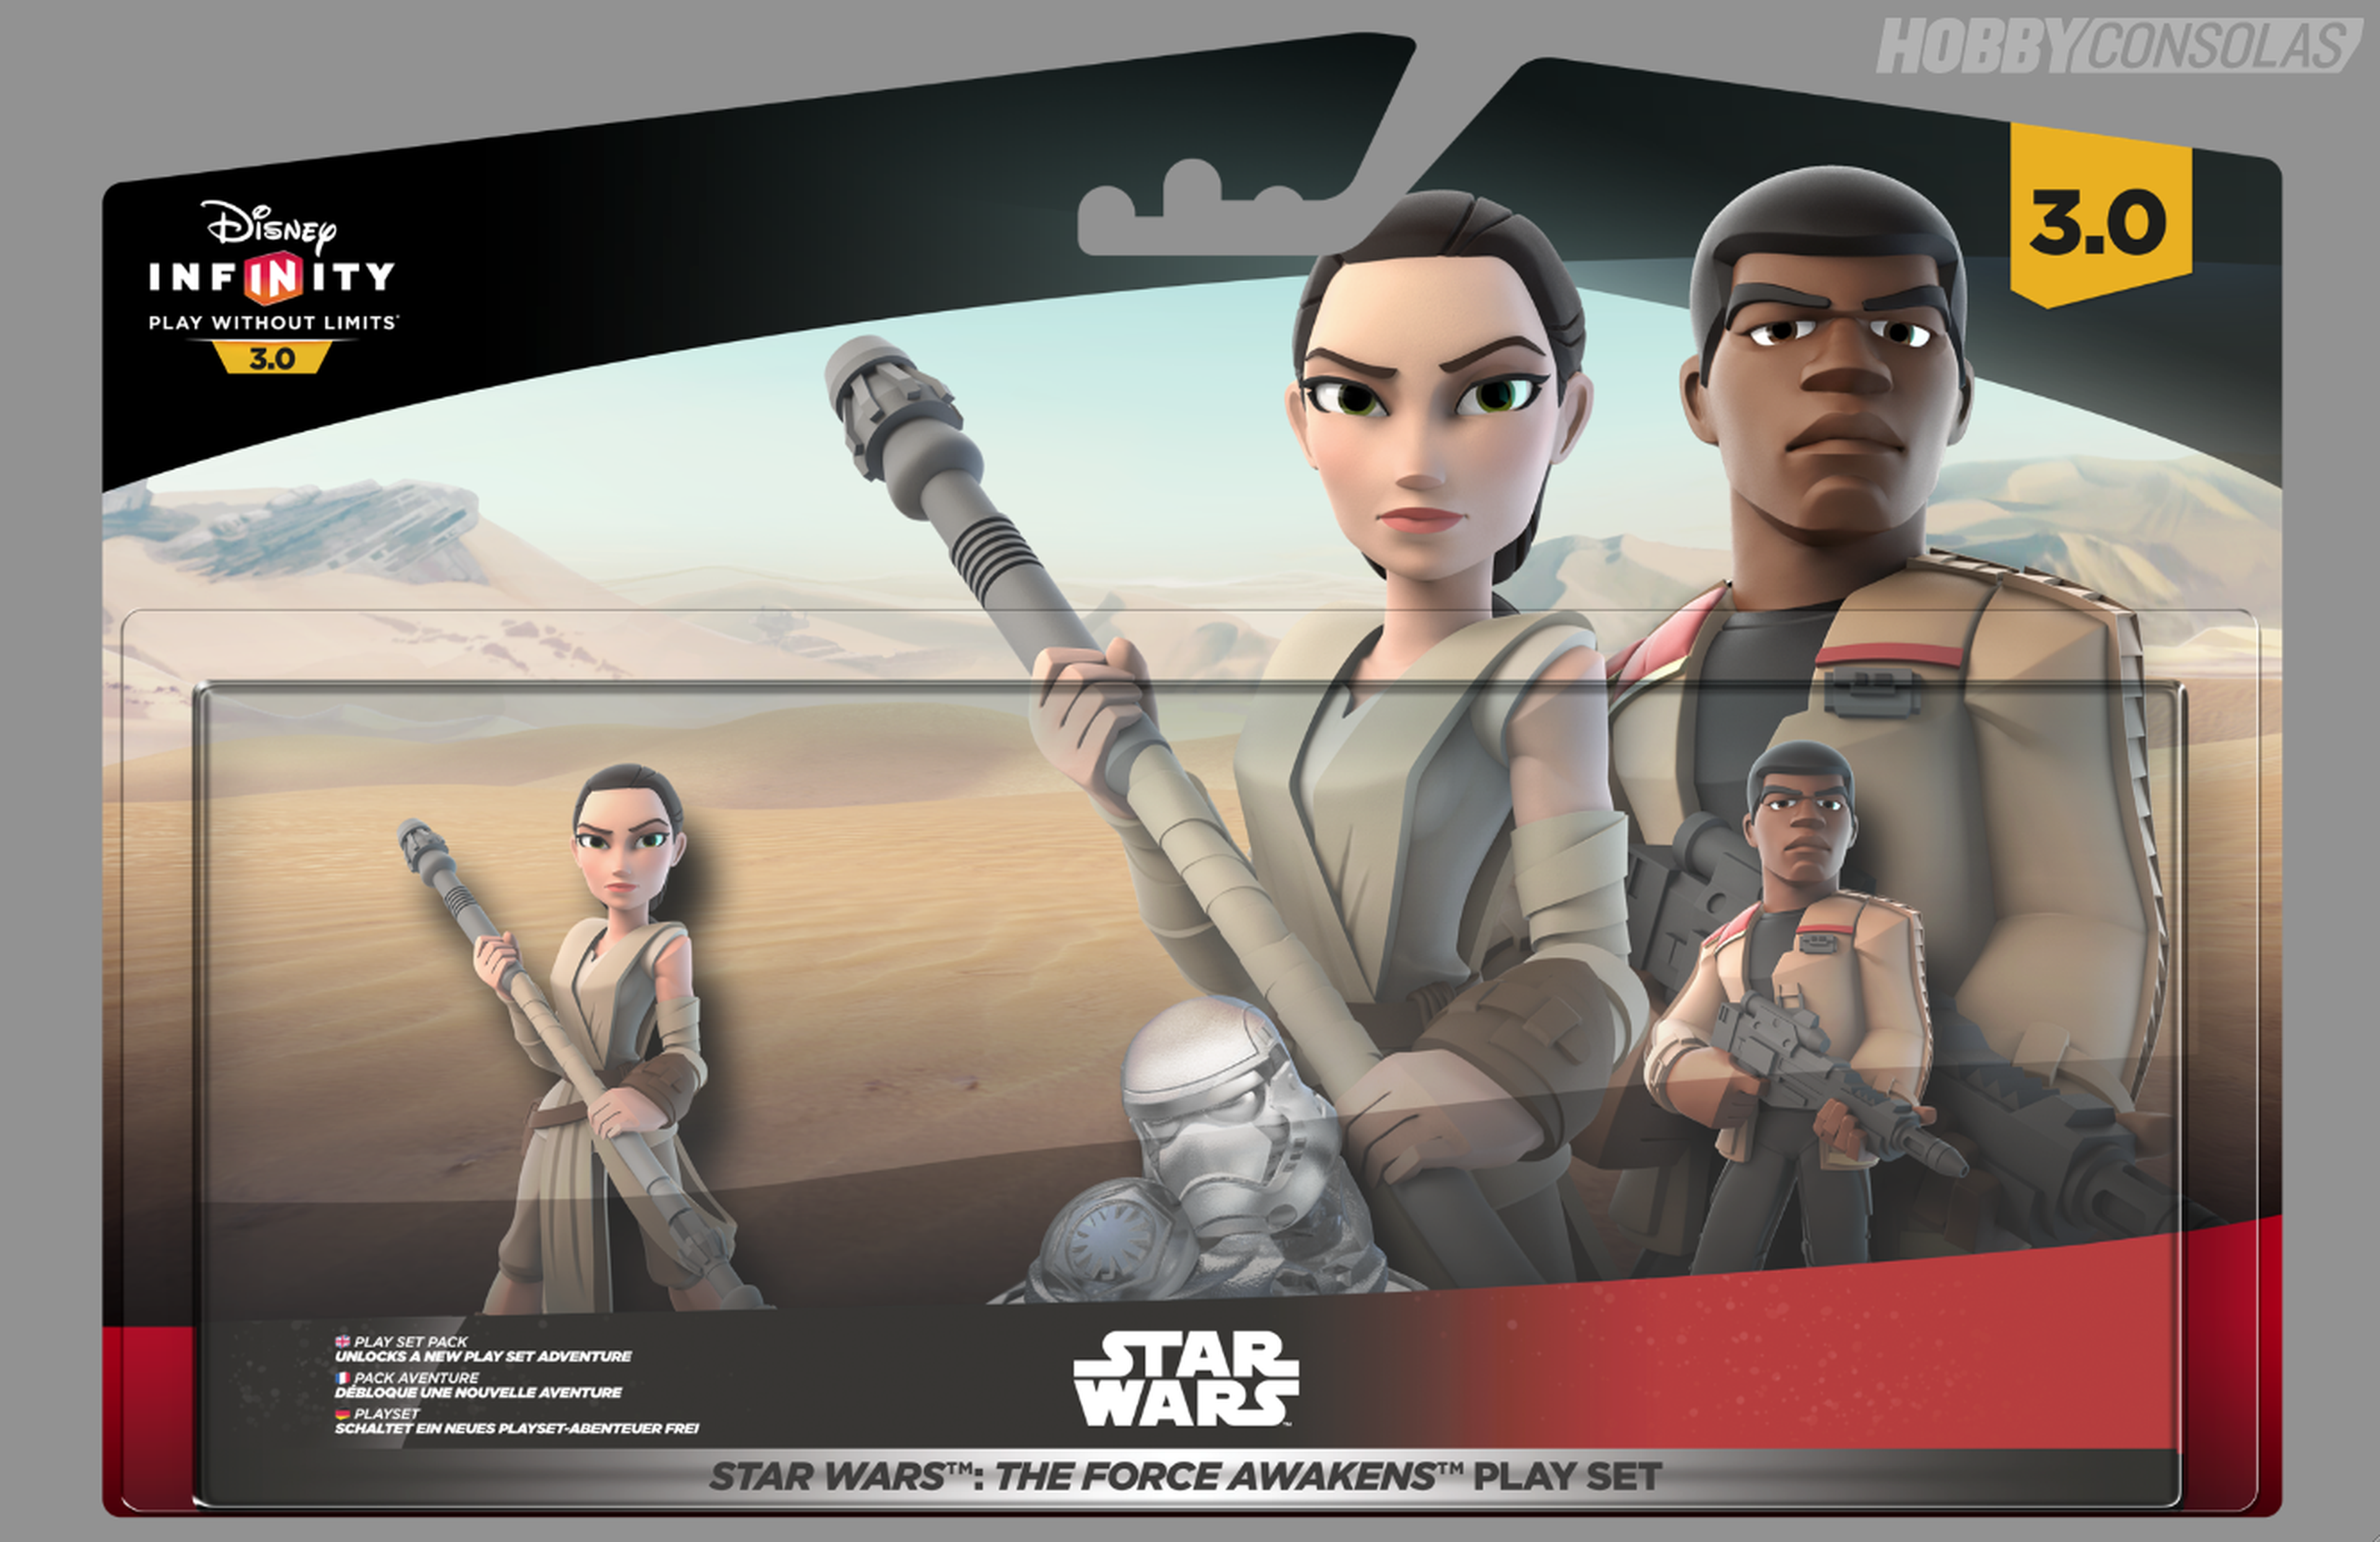 Concurso Disney Infinity 3.0: Star Wars El Despertar de la Fuerza en la Revista Nintendo